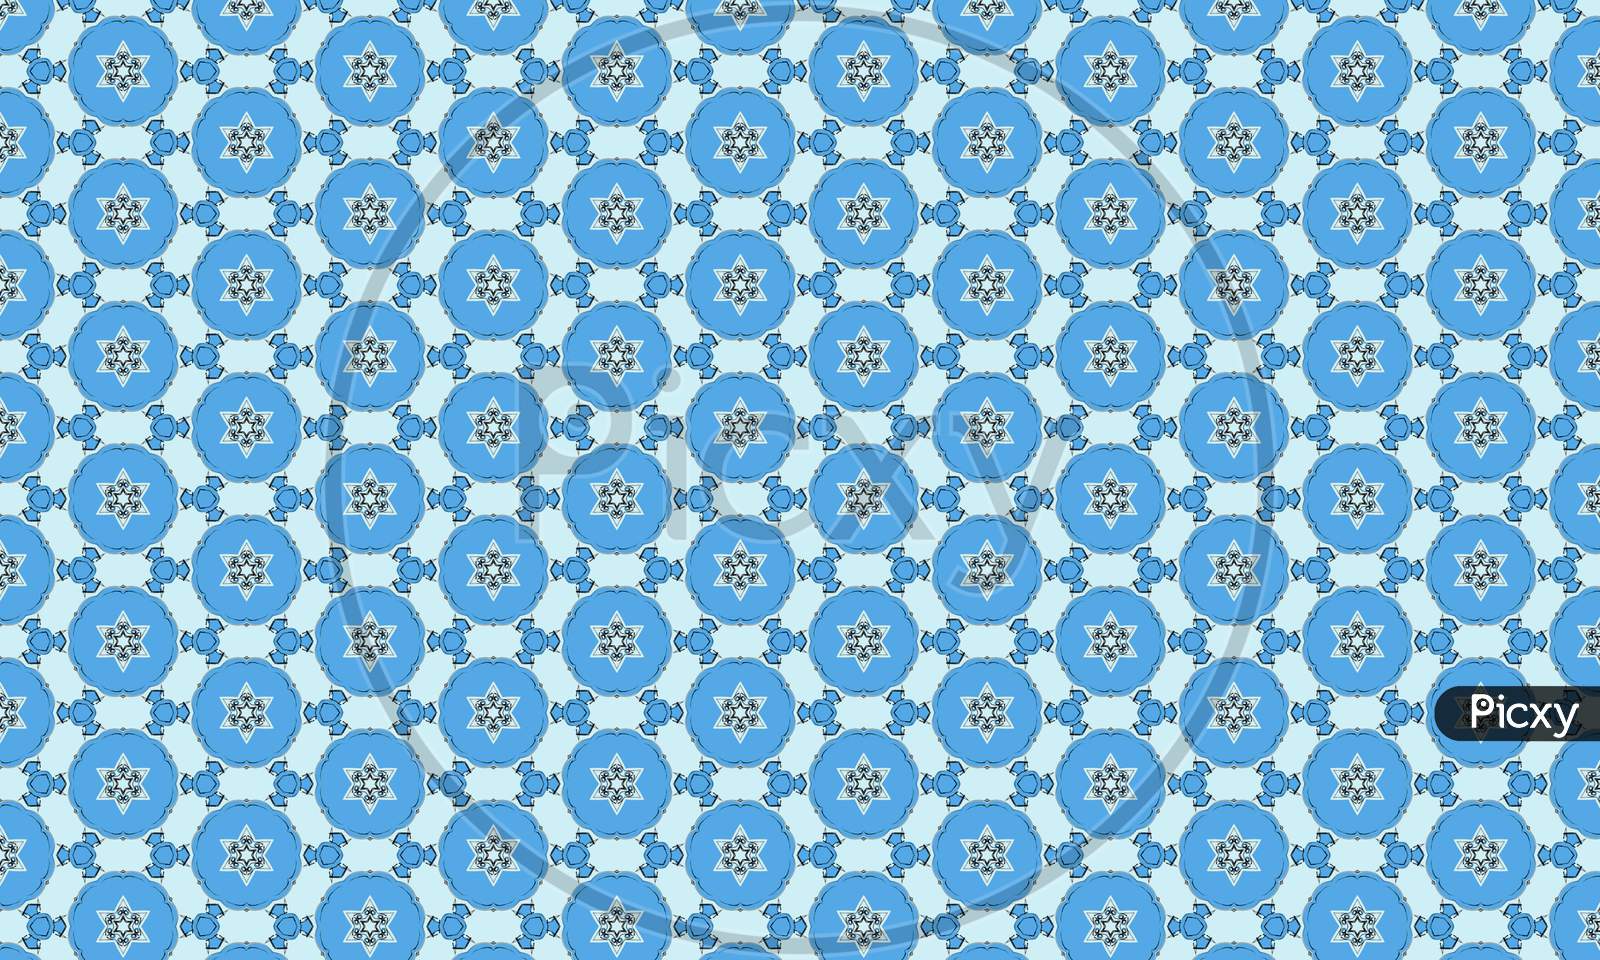 A seamless beautiful pattern with geometric pattern